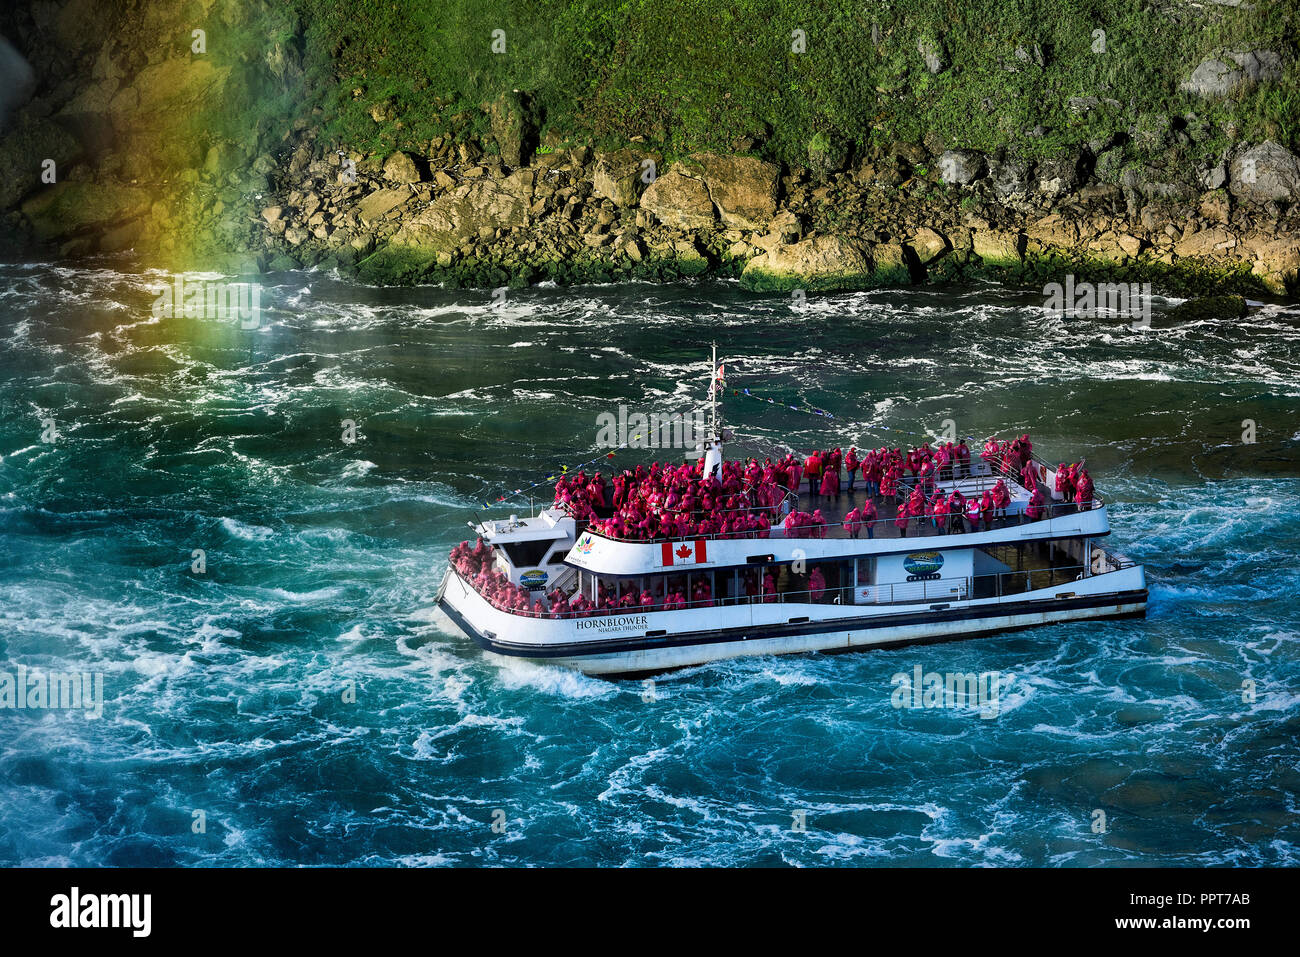 Approches bateau Horseshoe Falls, Niagara Falls, Ontario, Canada. Banque D'Images